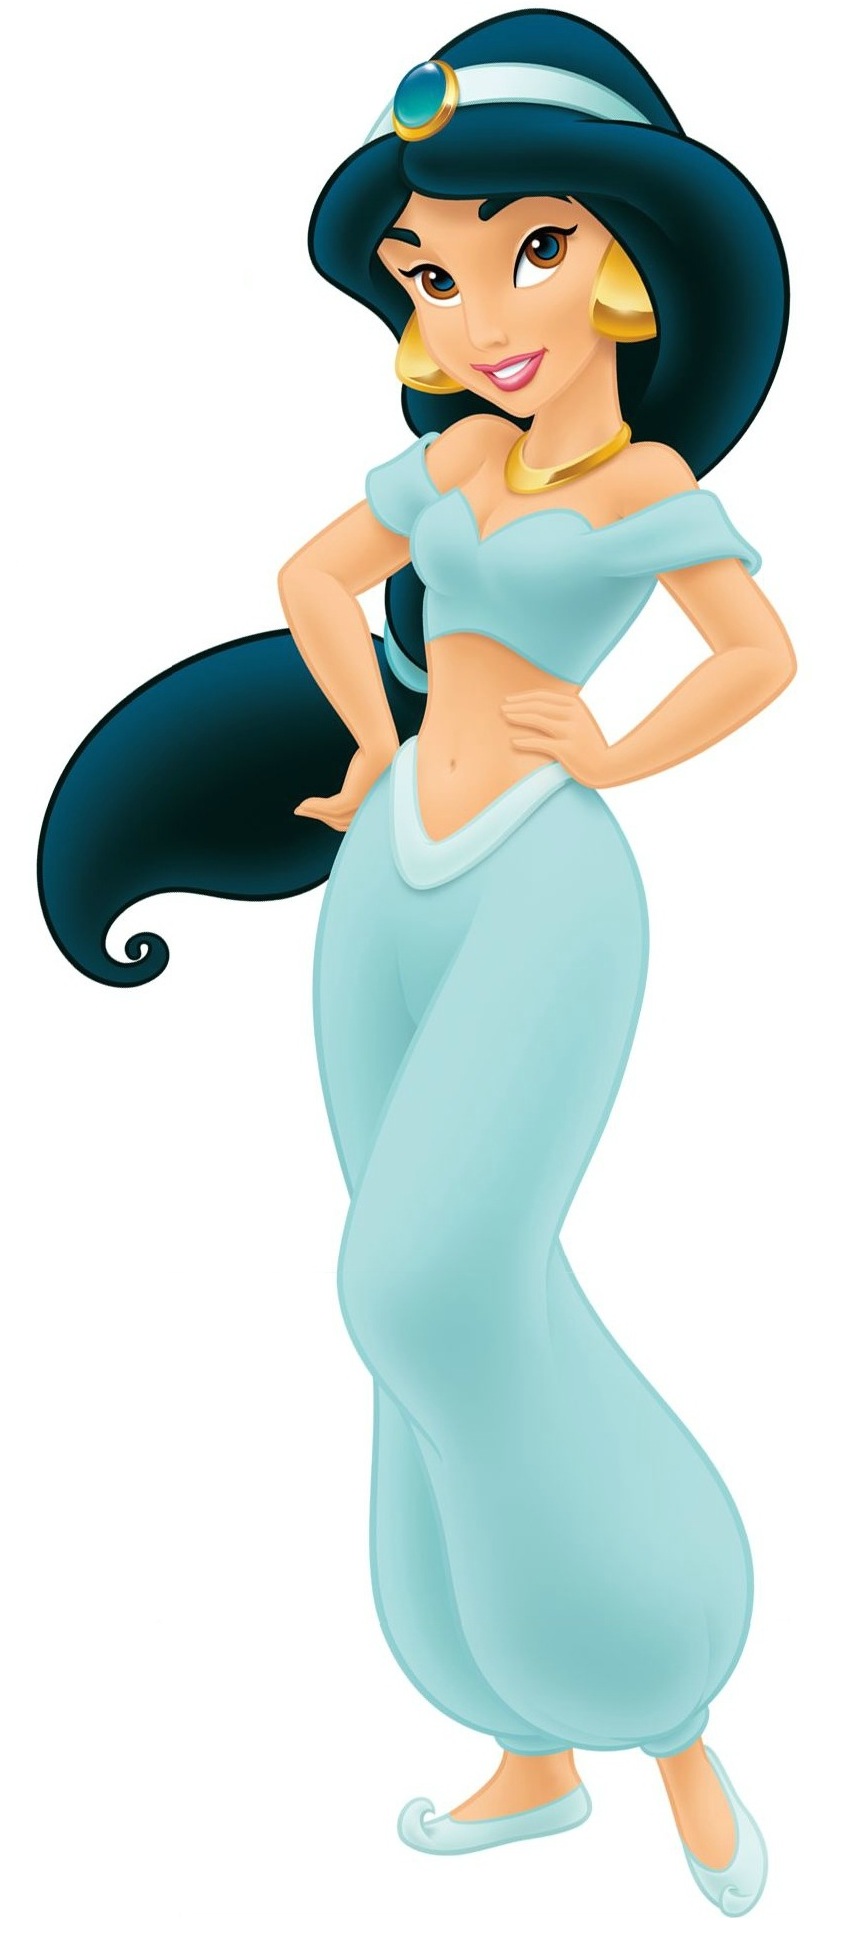 Jasmine Disney Wiki Serevent Accuhaler Spc